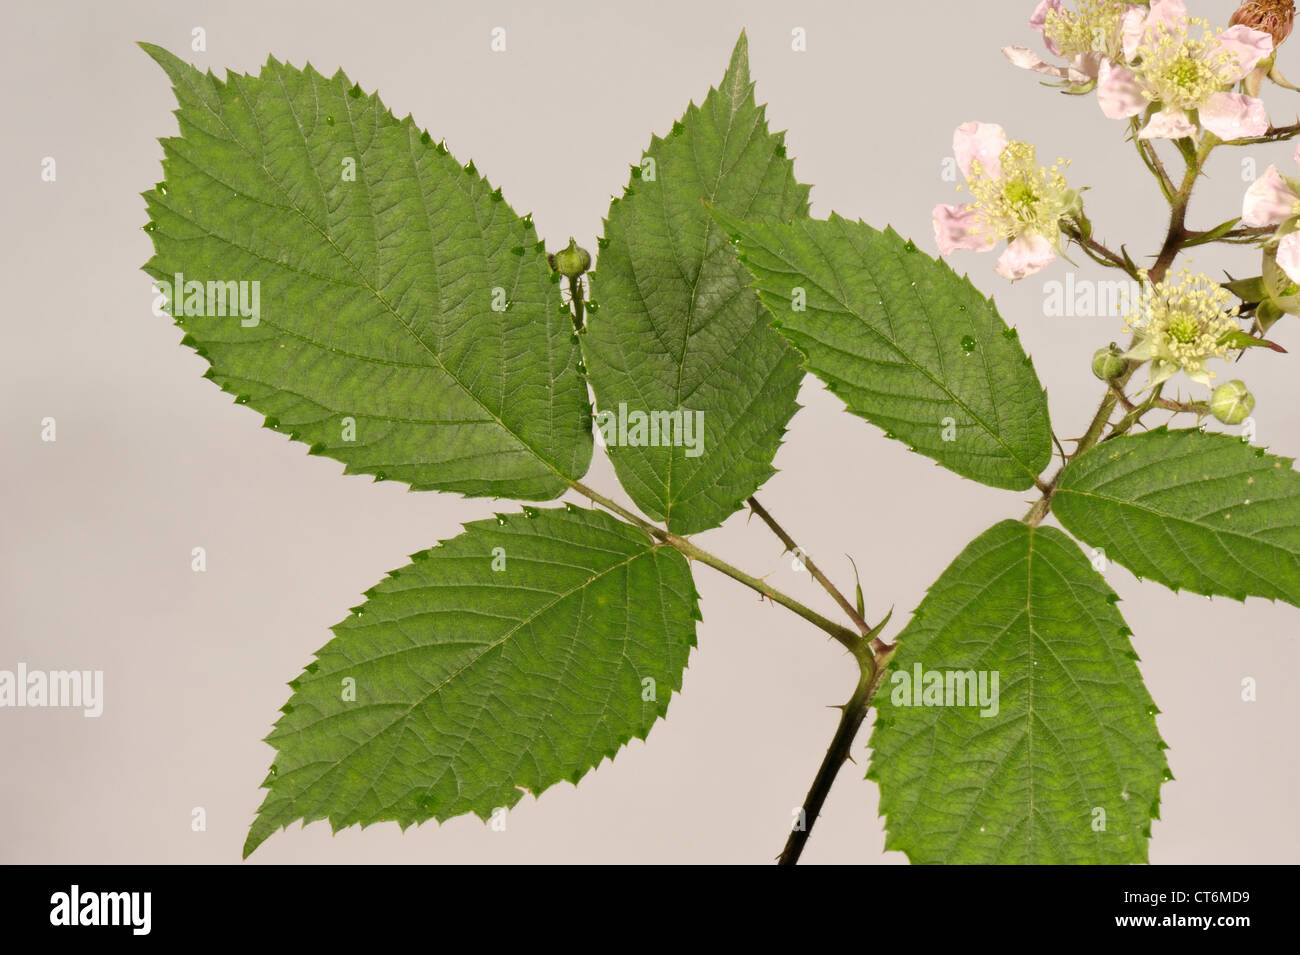 BlackBerry oder Brombeere Rubus Fruticosus Blätter und Blüten Stockfoto